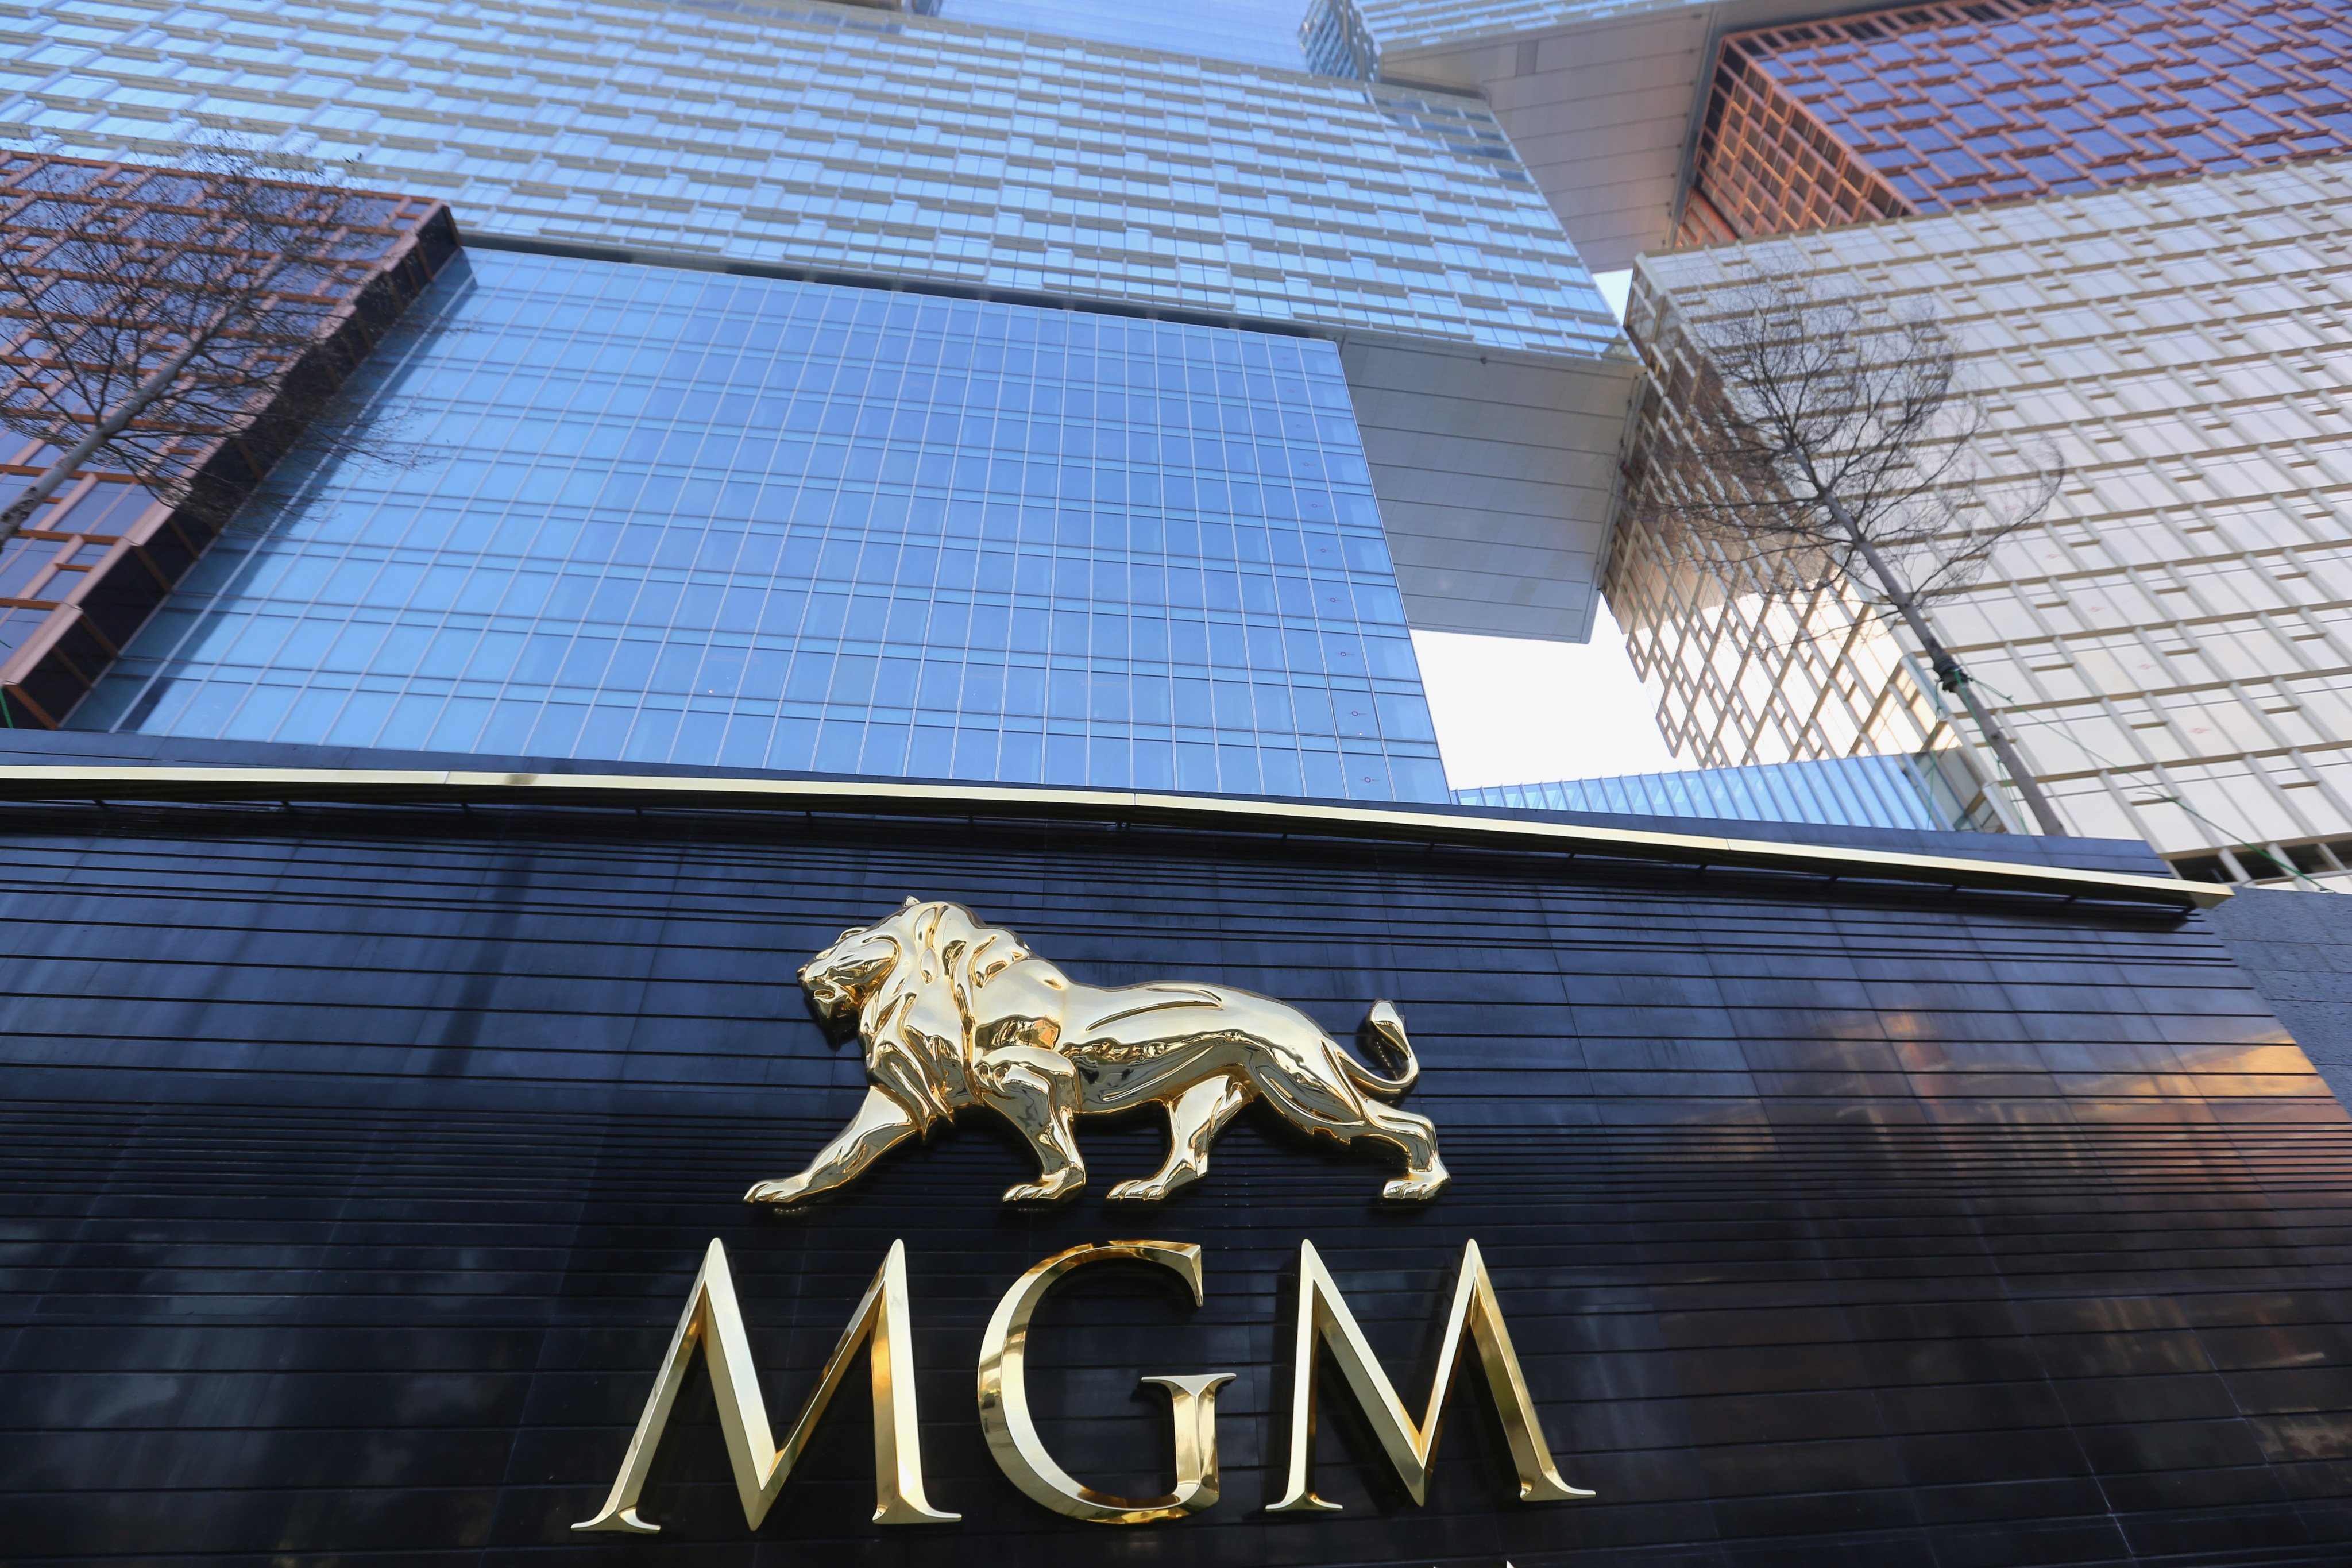 The MGM Cotai hotel in Macau, pictured in February 2018. Photo: Xiaomei Chen